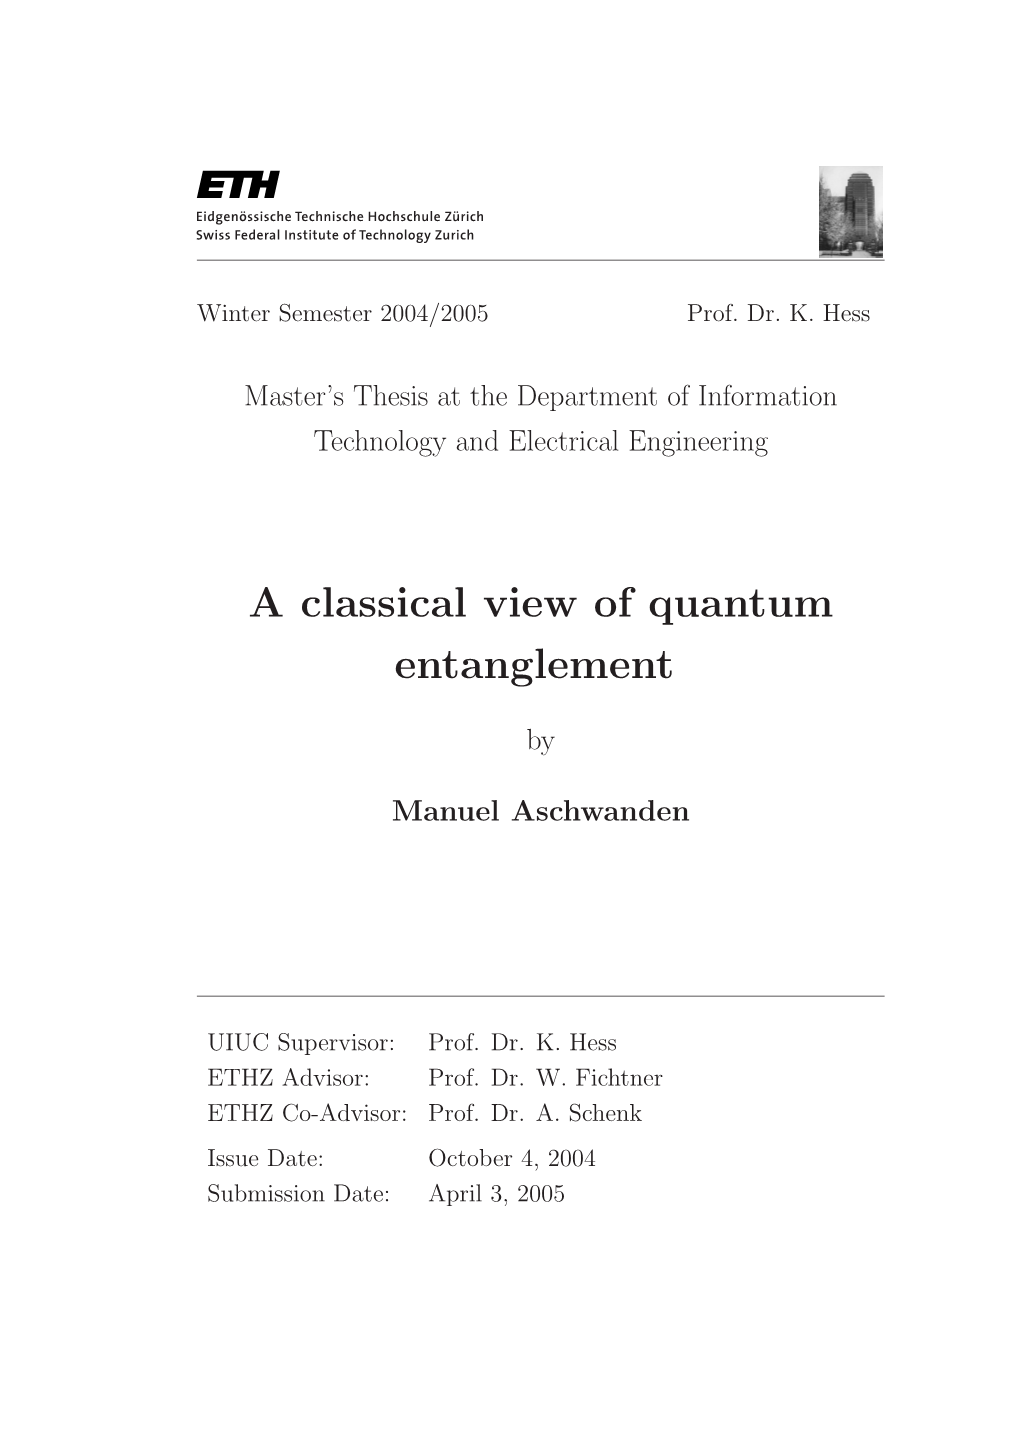 Manuel Aschwanden, ``A Classical View of Quantum Entanglement